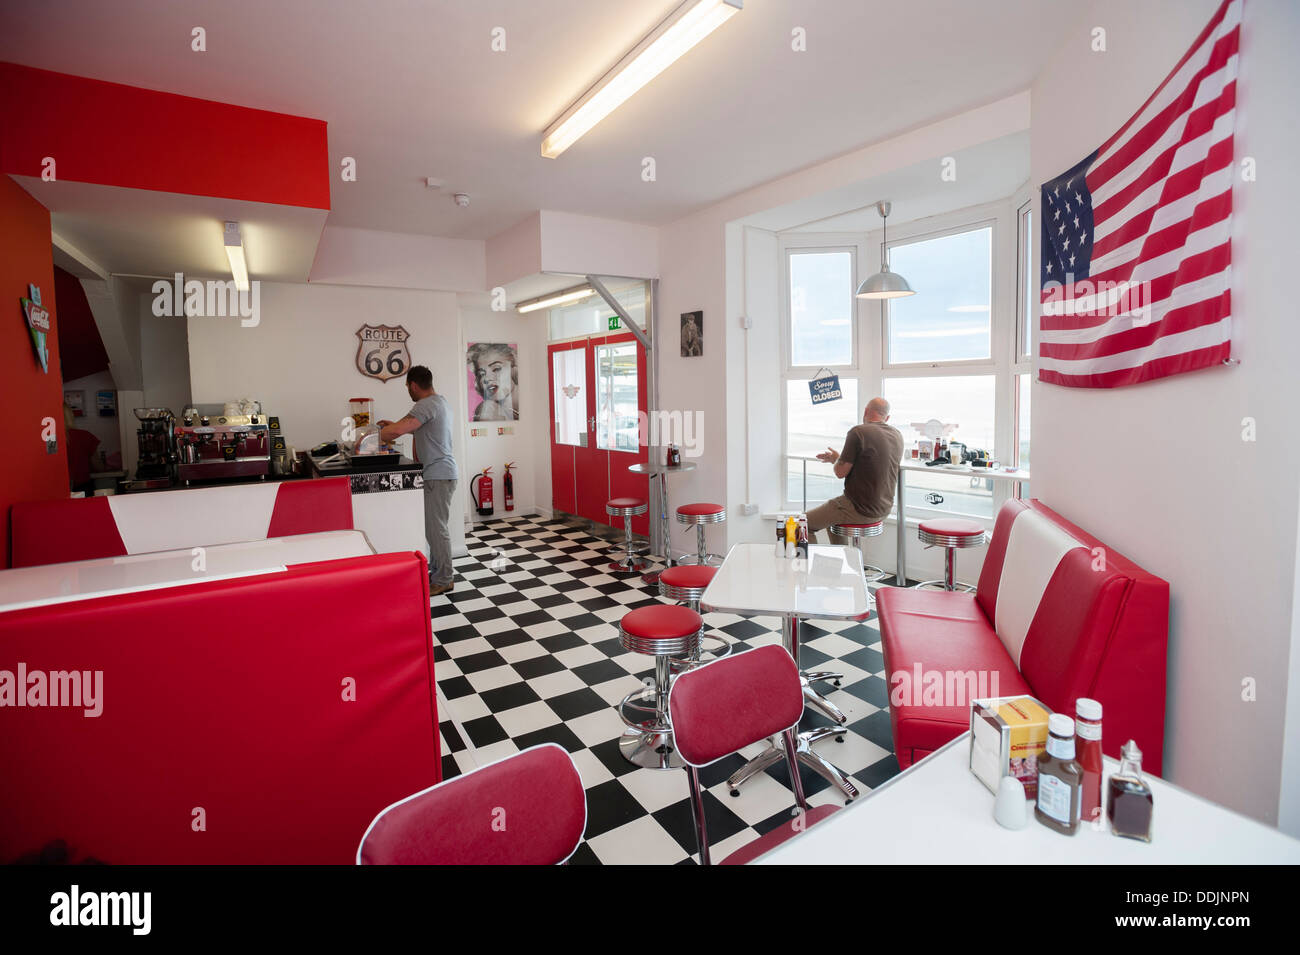 L'intérieur, de style américain TY's retro 50's Diner cafe, Aberystwyth, Pays de Galles au Royaume-Uni. Banque D'Images